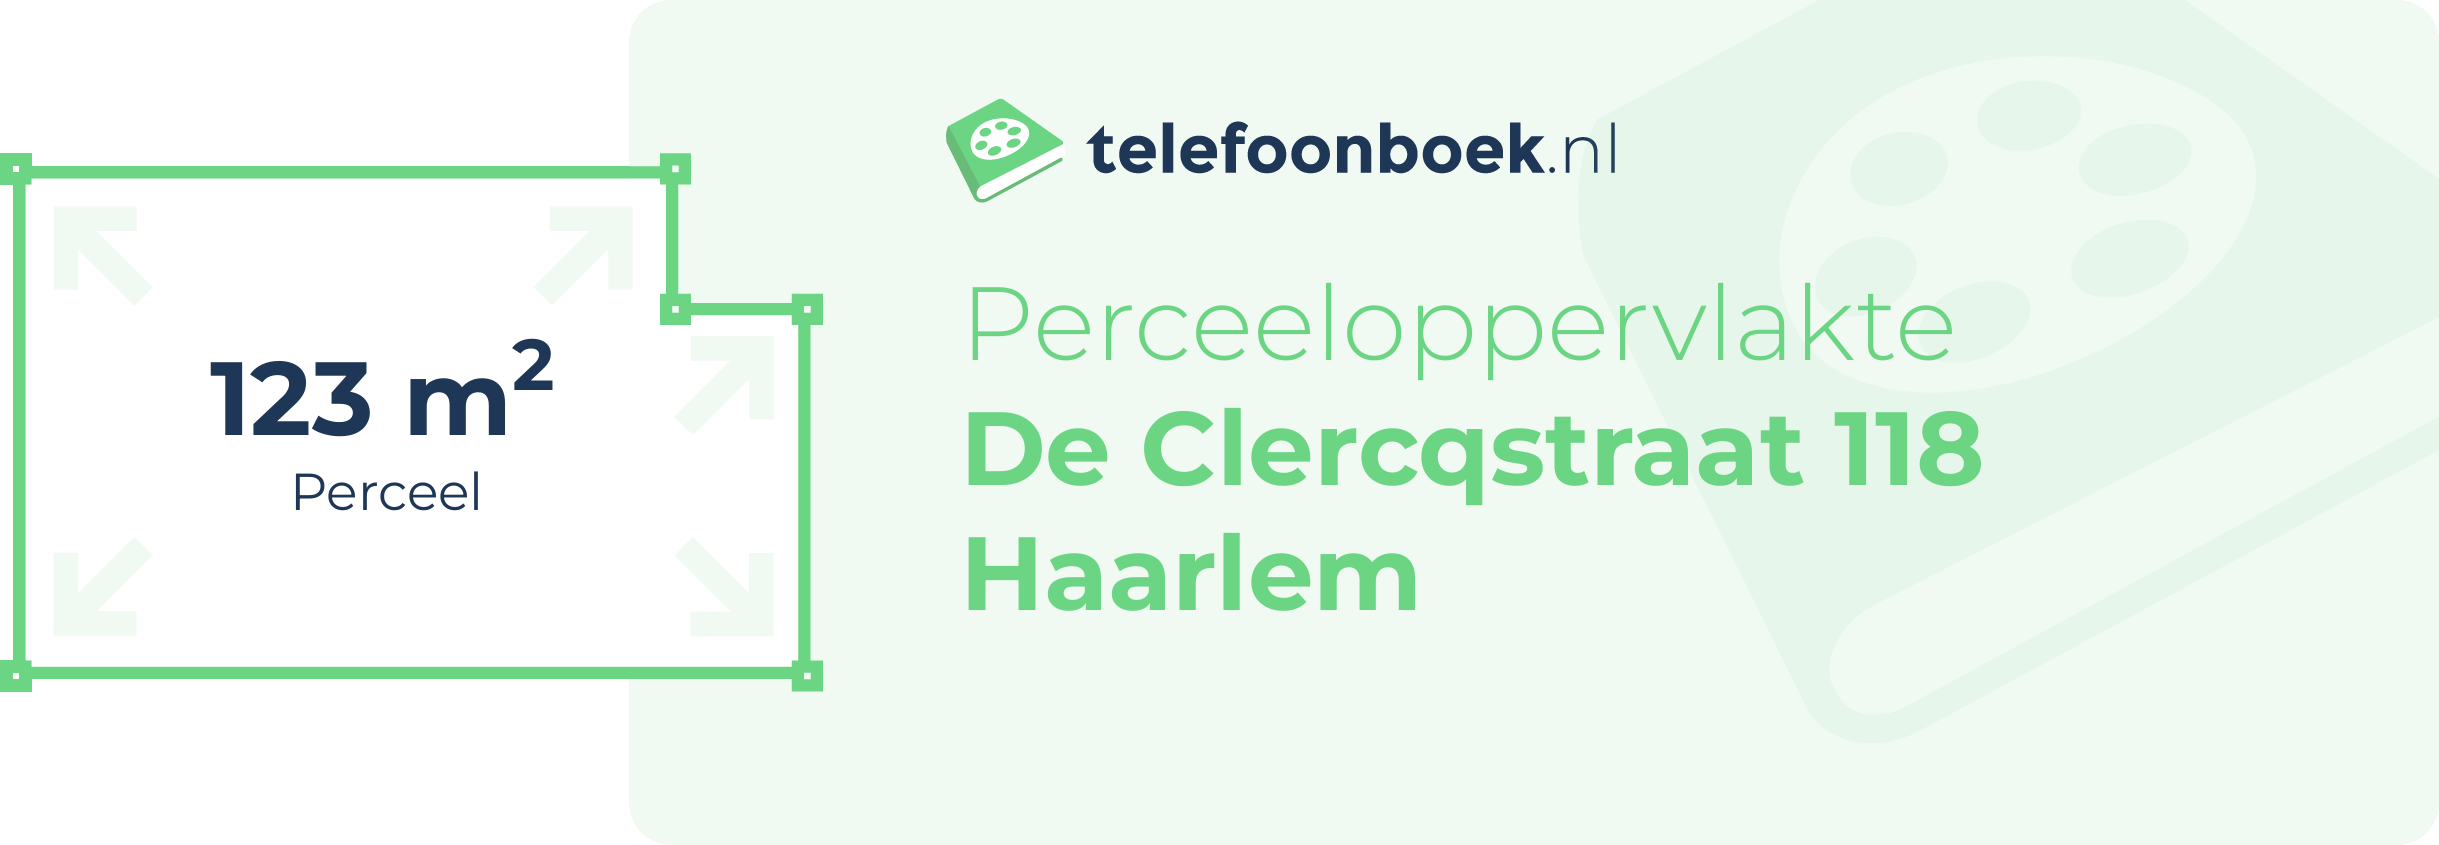 Perceeloppervlakte De Clercqstraat 118 Haarlem